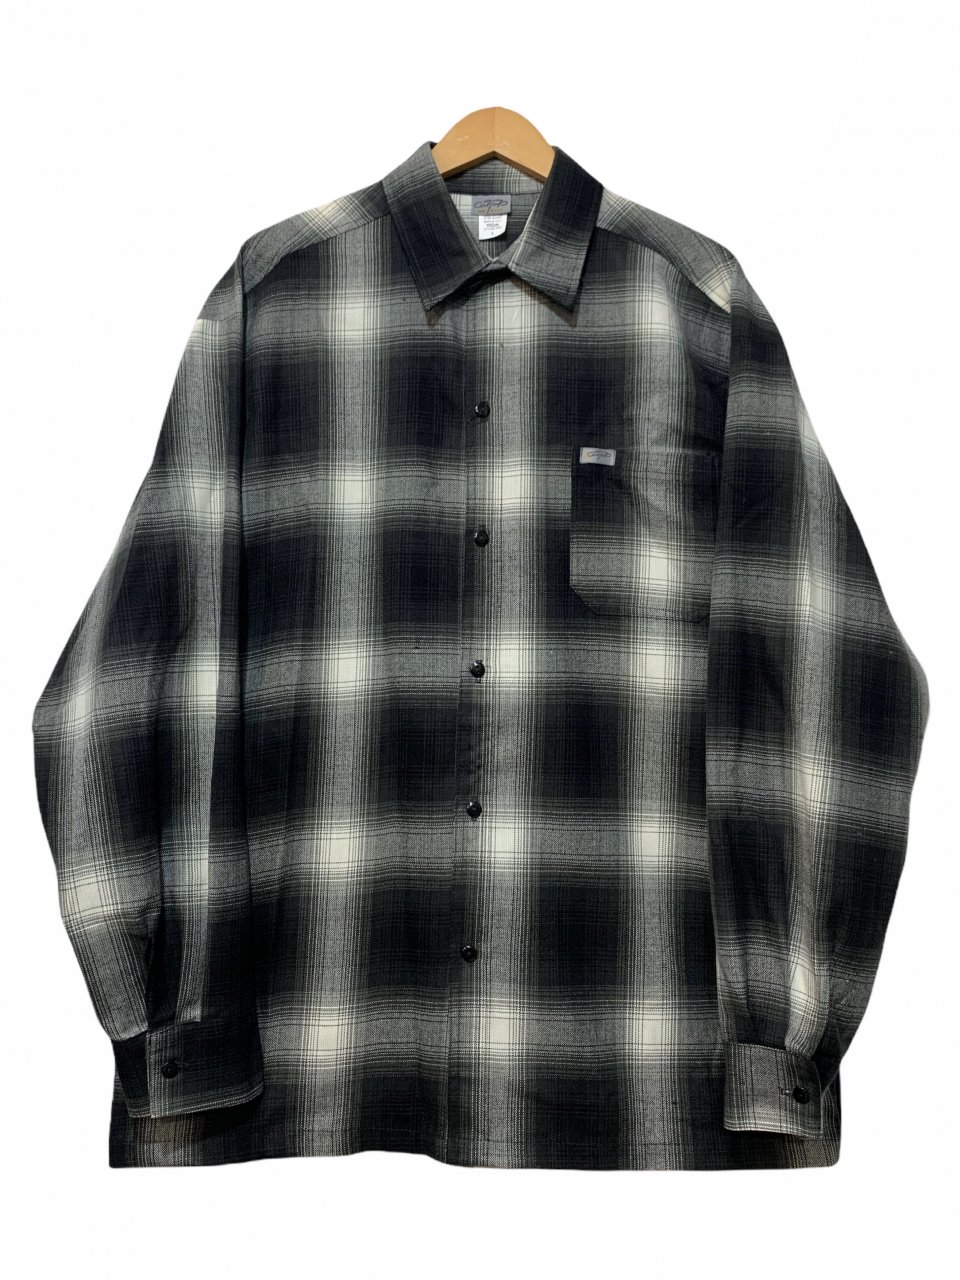 新品 CALTOP Ombre Check L/S Shirt (BLACK) キャルトップ 長袖 チェックシャツ オンブレチェック シャドーチェック  黒 ブラック カルトップ - NEWJOKE ONLINE STORE